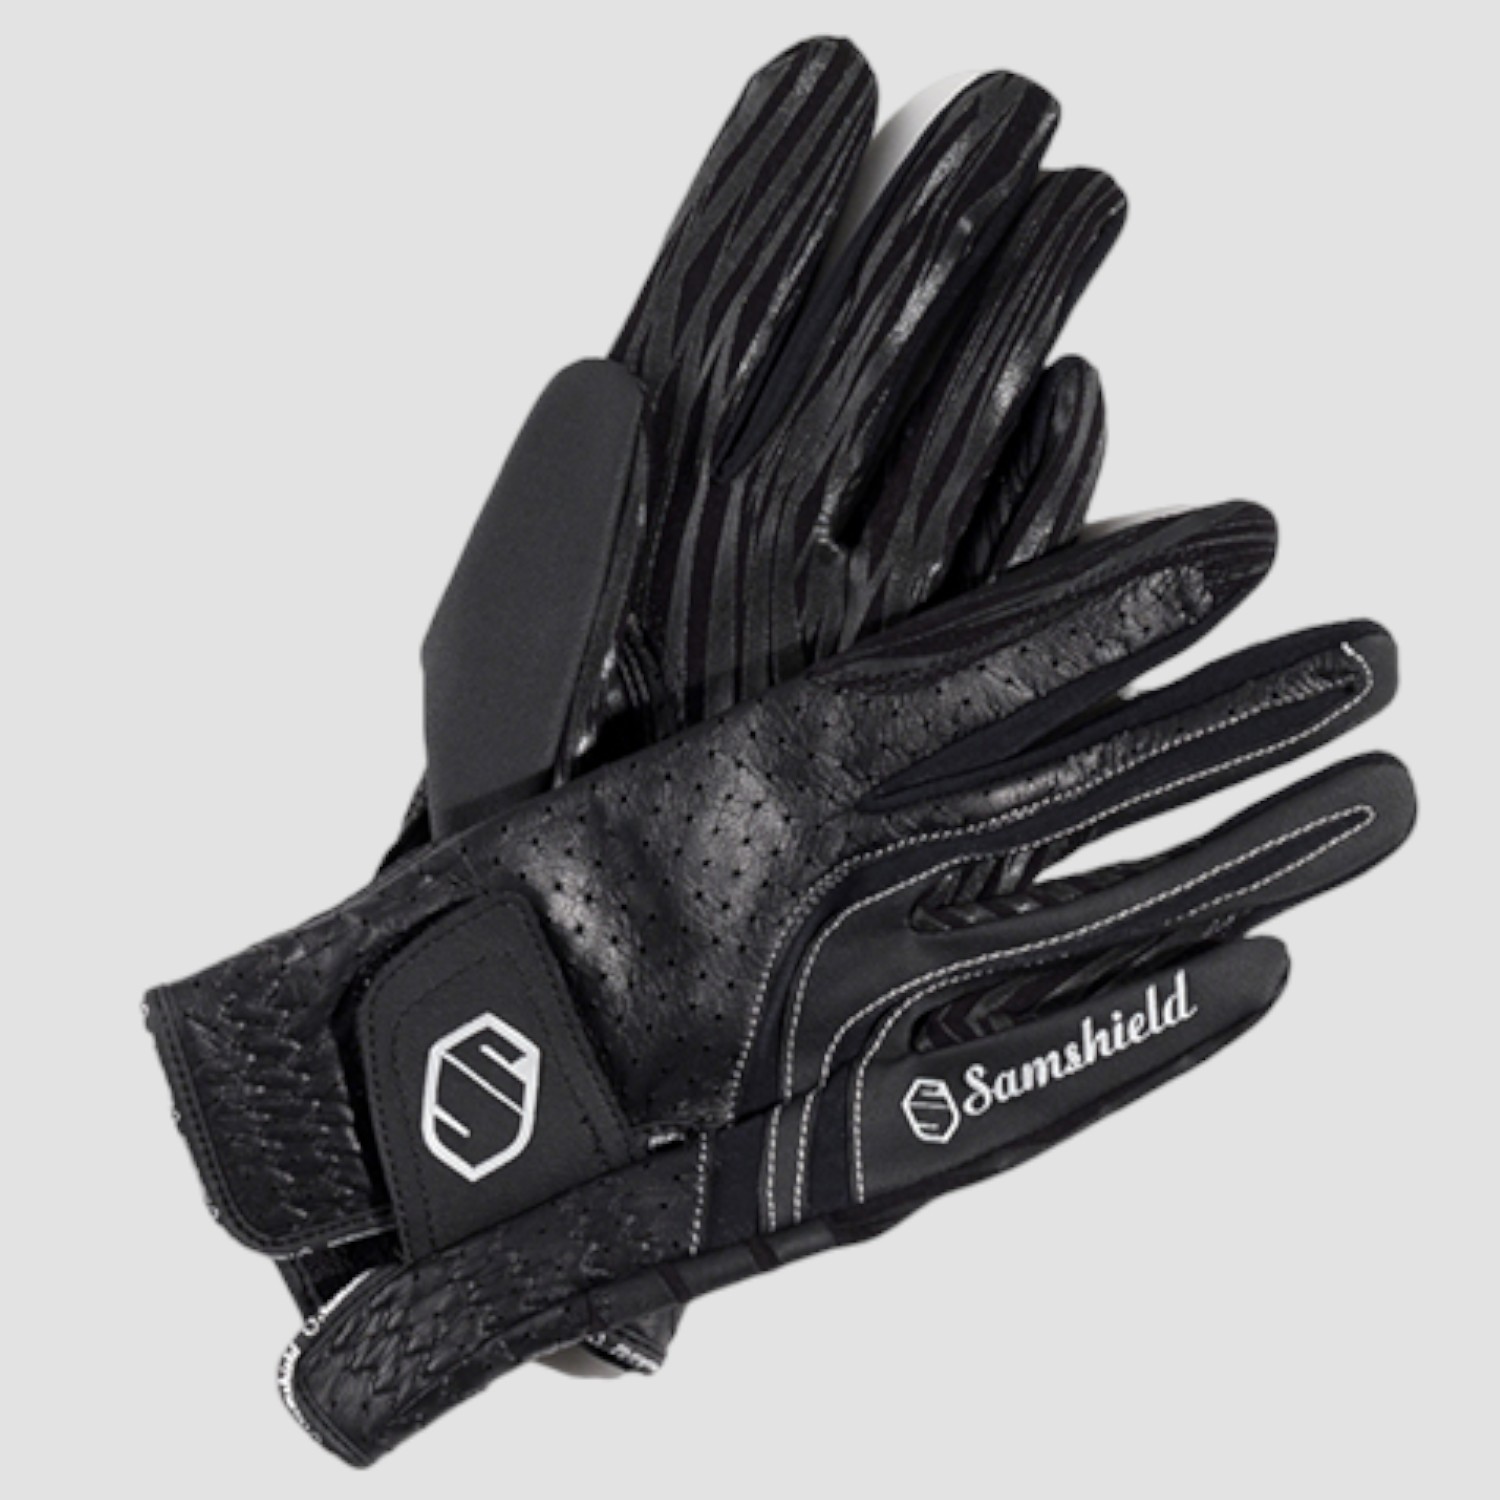 Samshield Handschuhe V-Skin Gr. 10,5